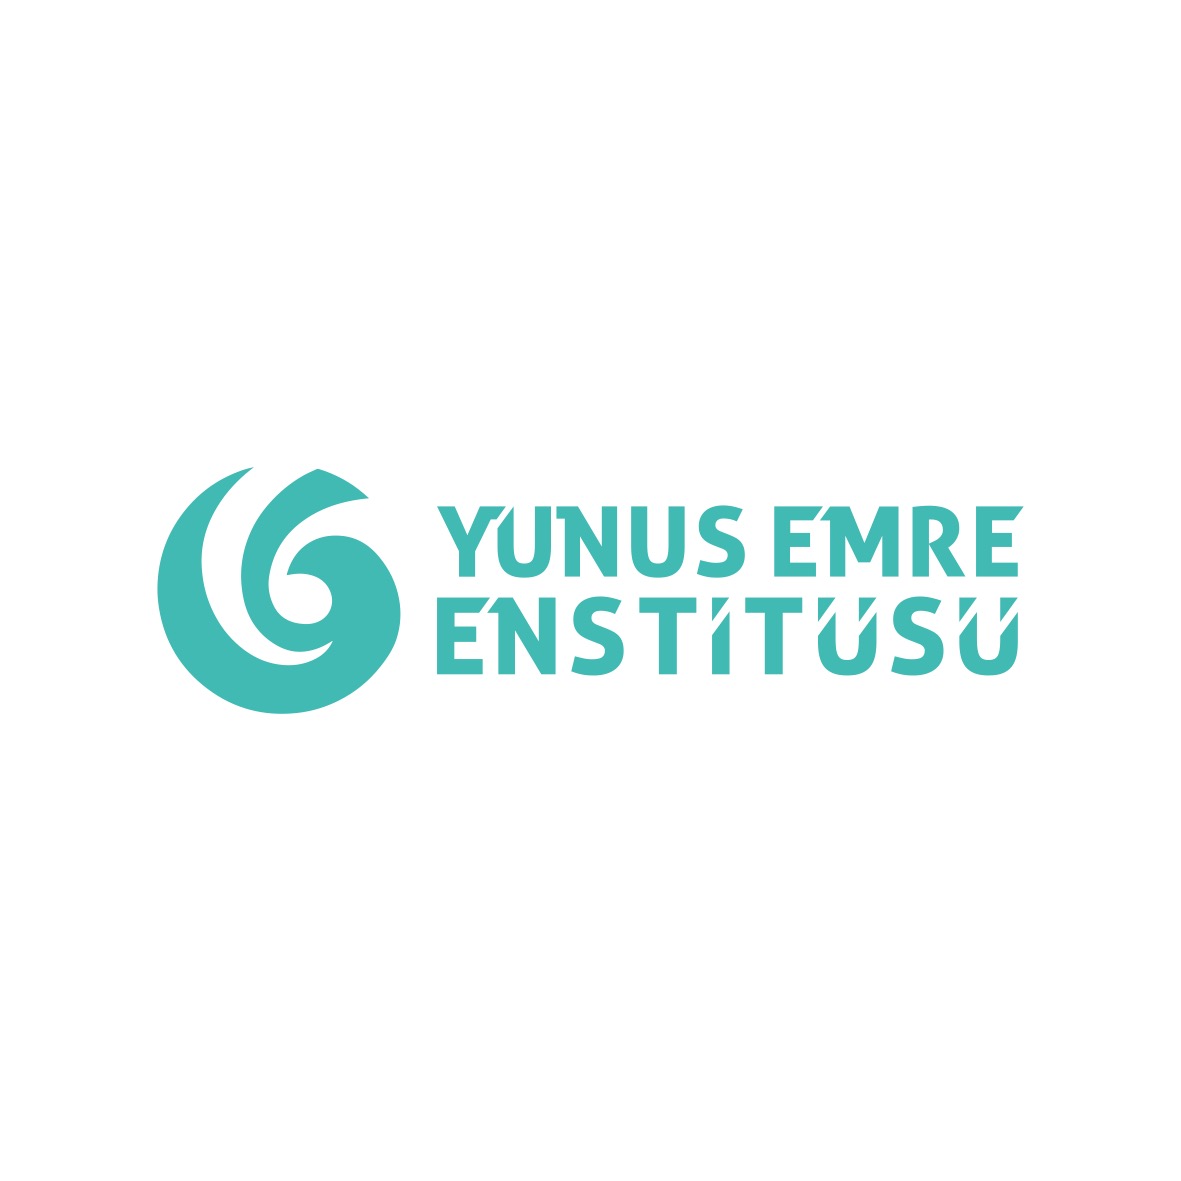 Yunus Emre Institute logo